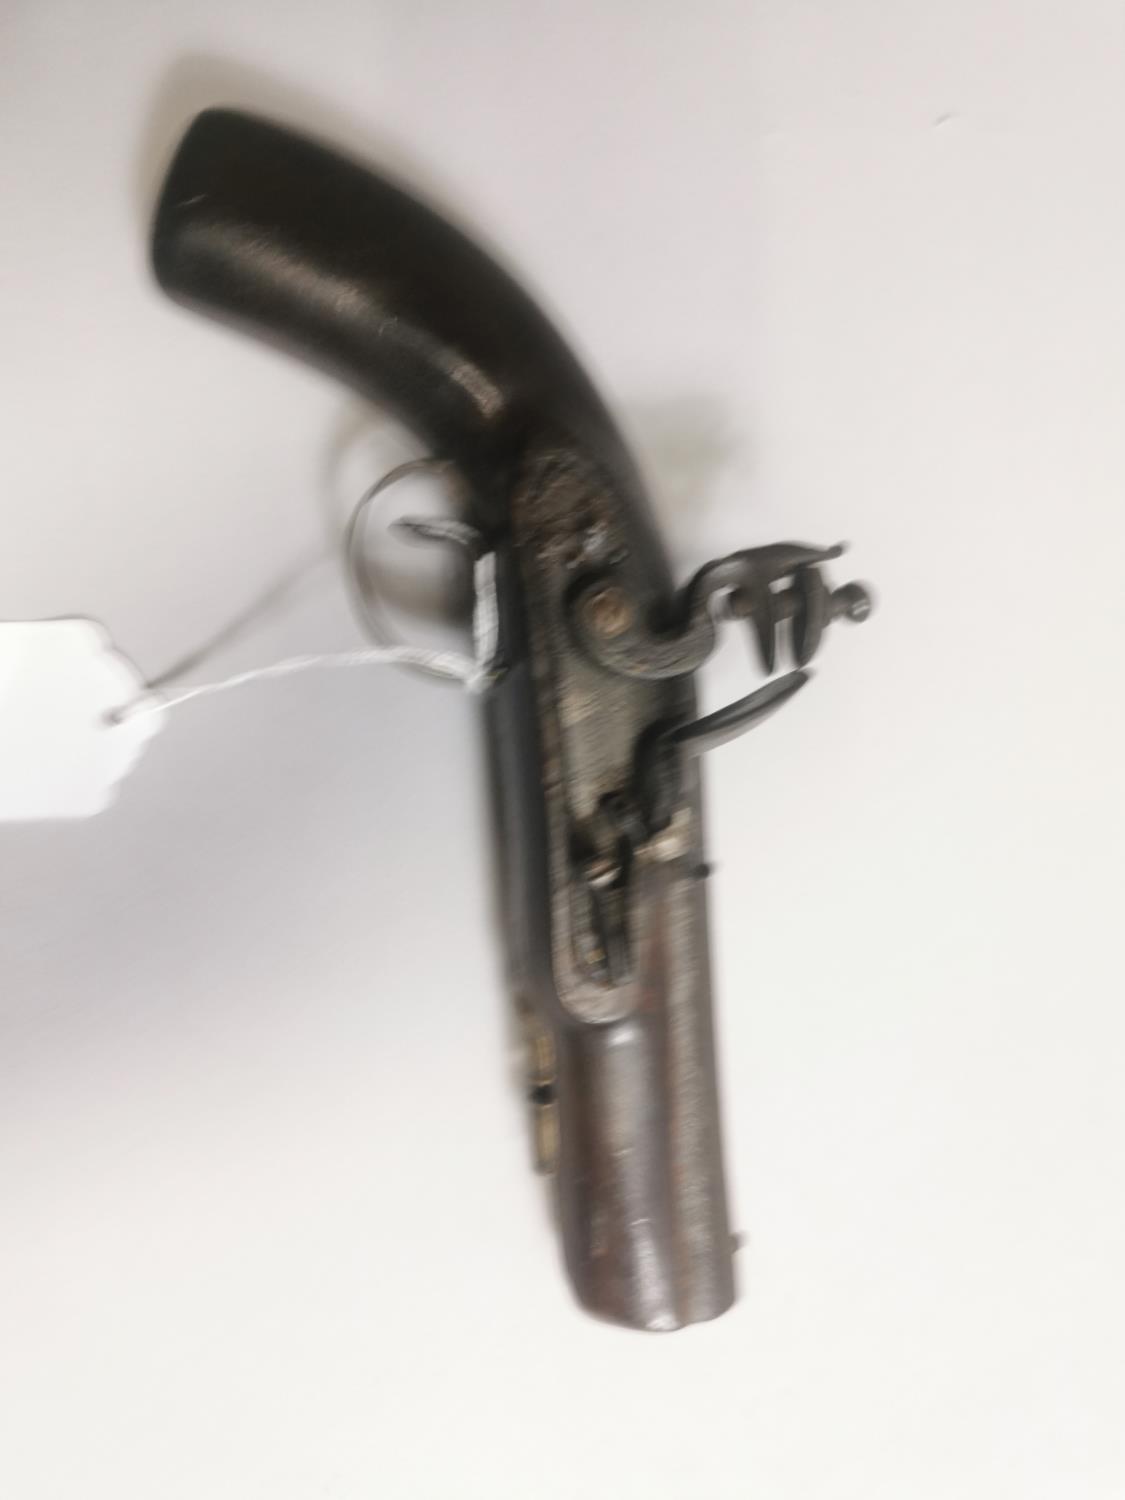 19th. C. flintlock pistol